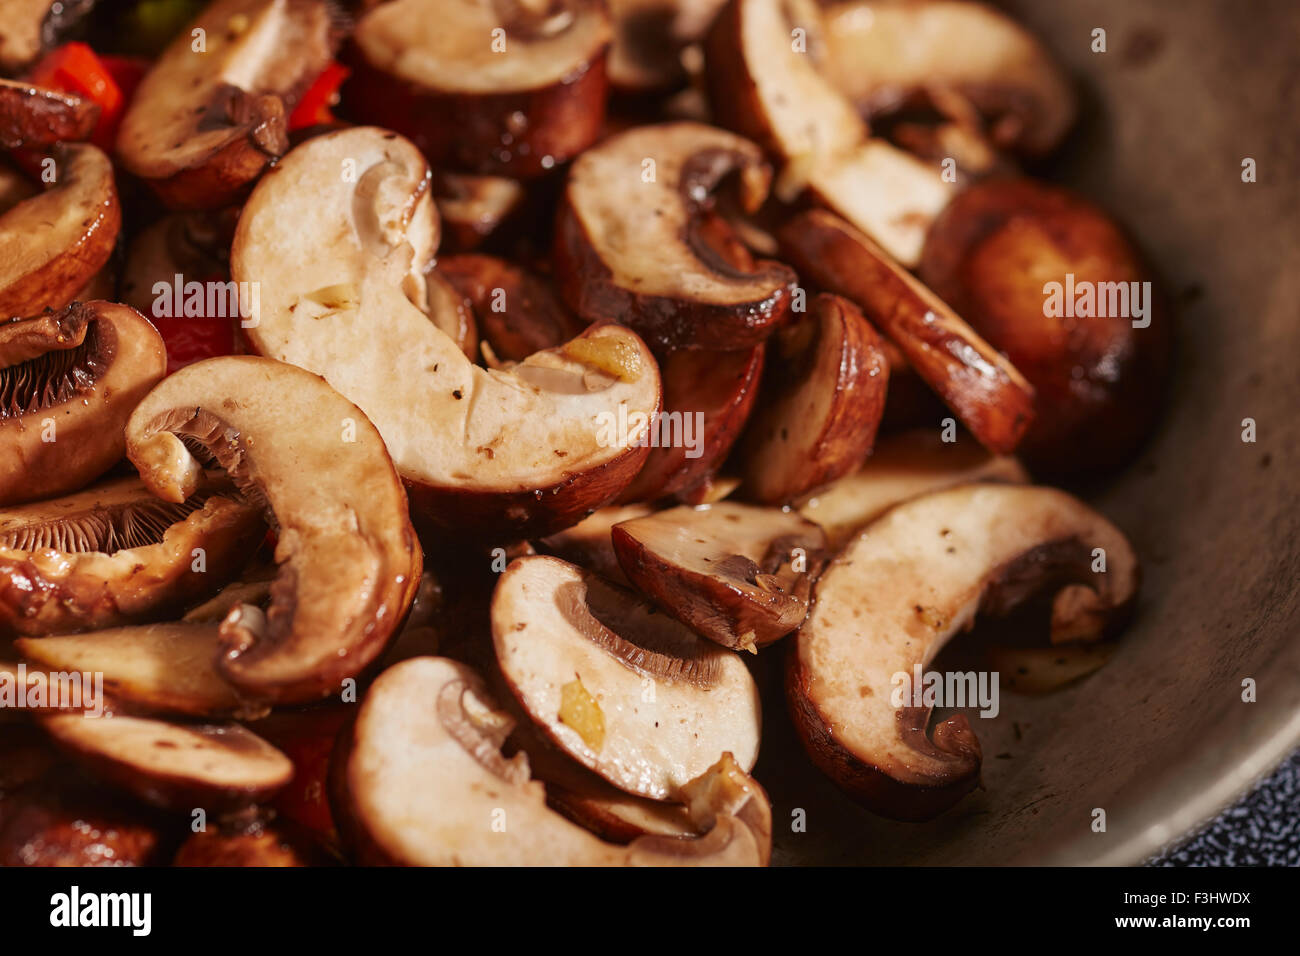 crimini mushroom slices frying in a skillet Stock Photo